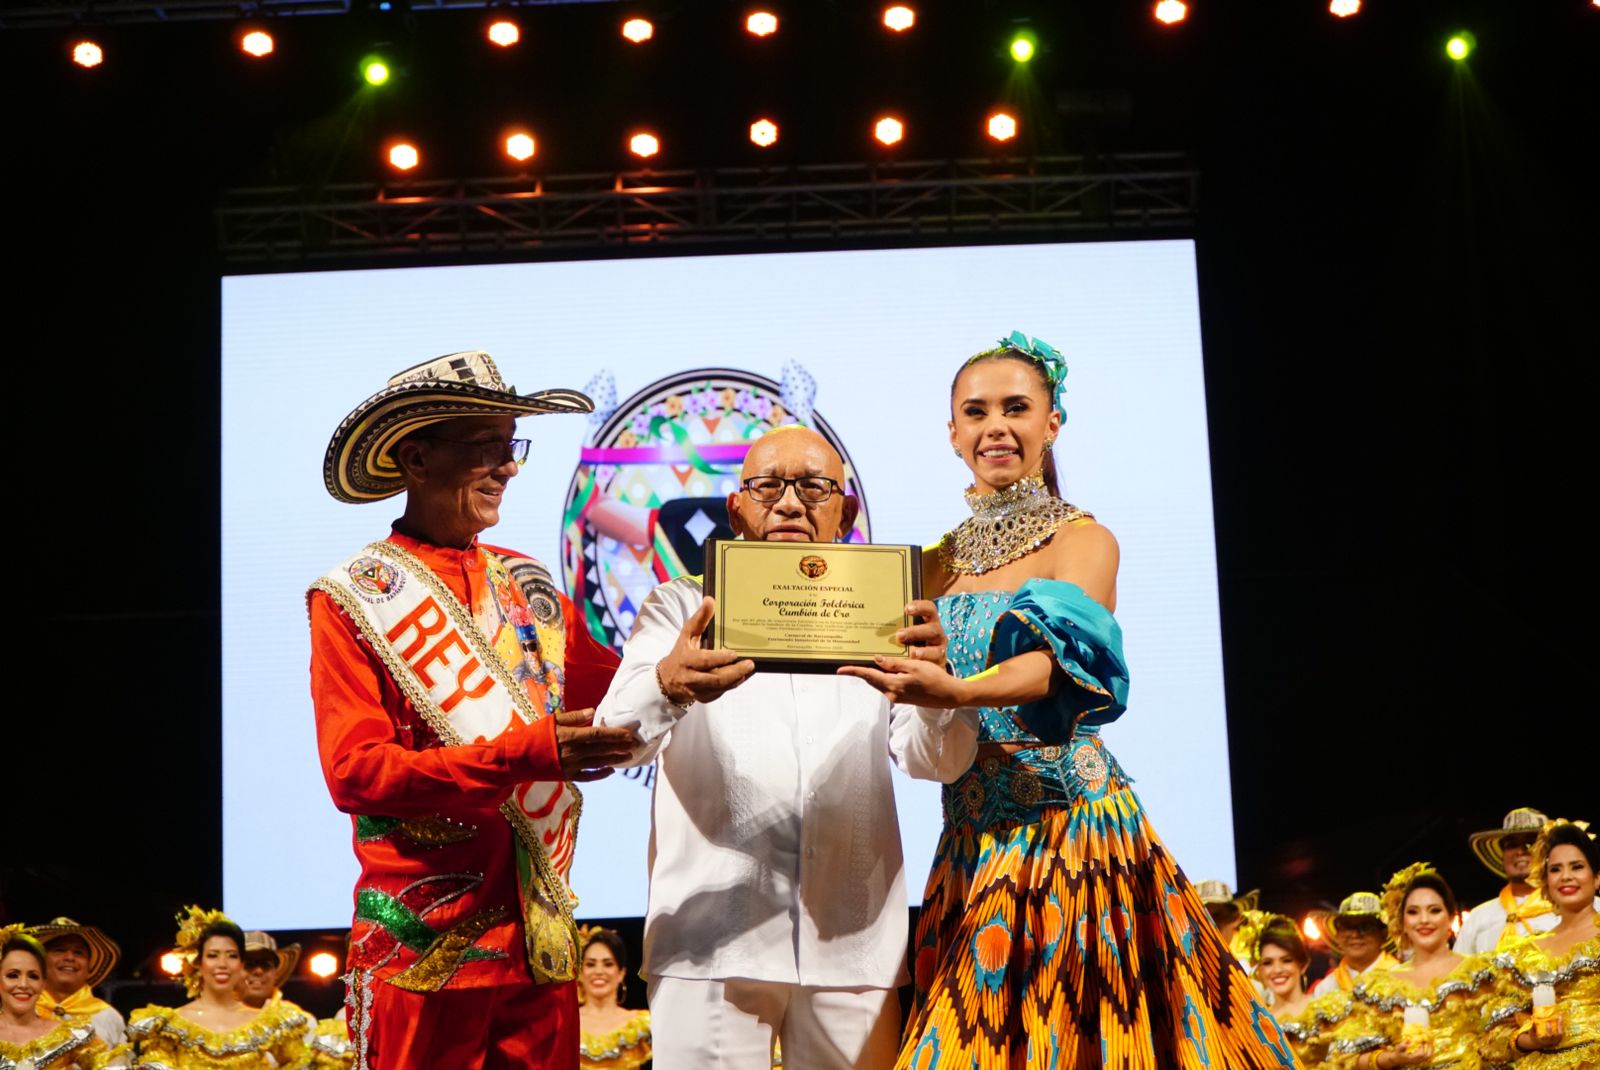 El director del Cumbión de Oro, Gabriel Marriaga, recibiendo el reconocimiento.